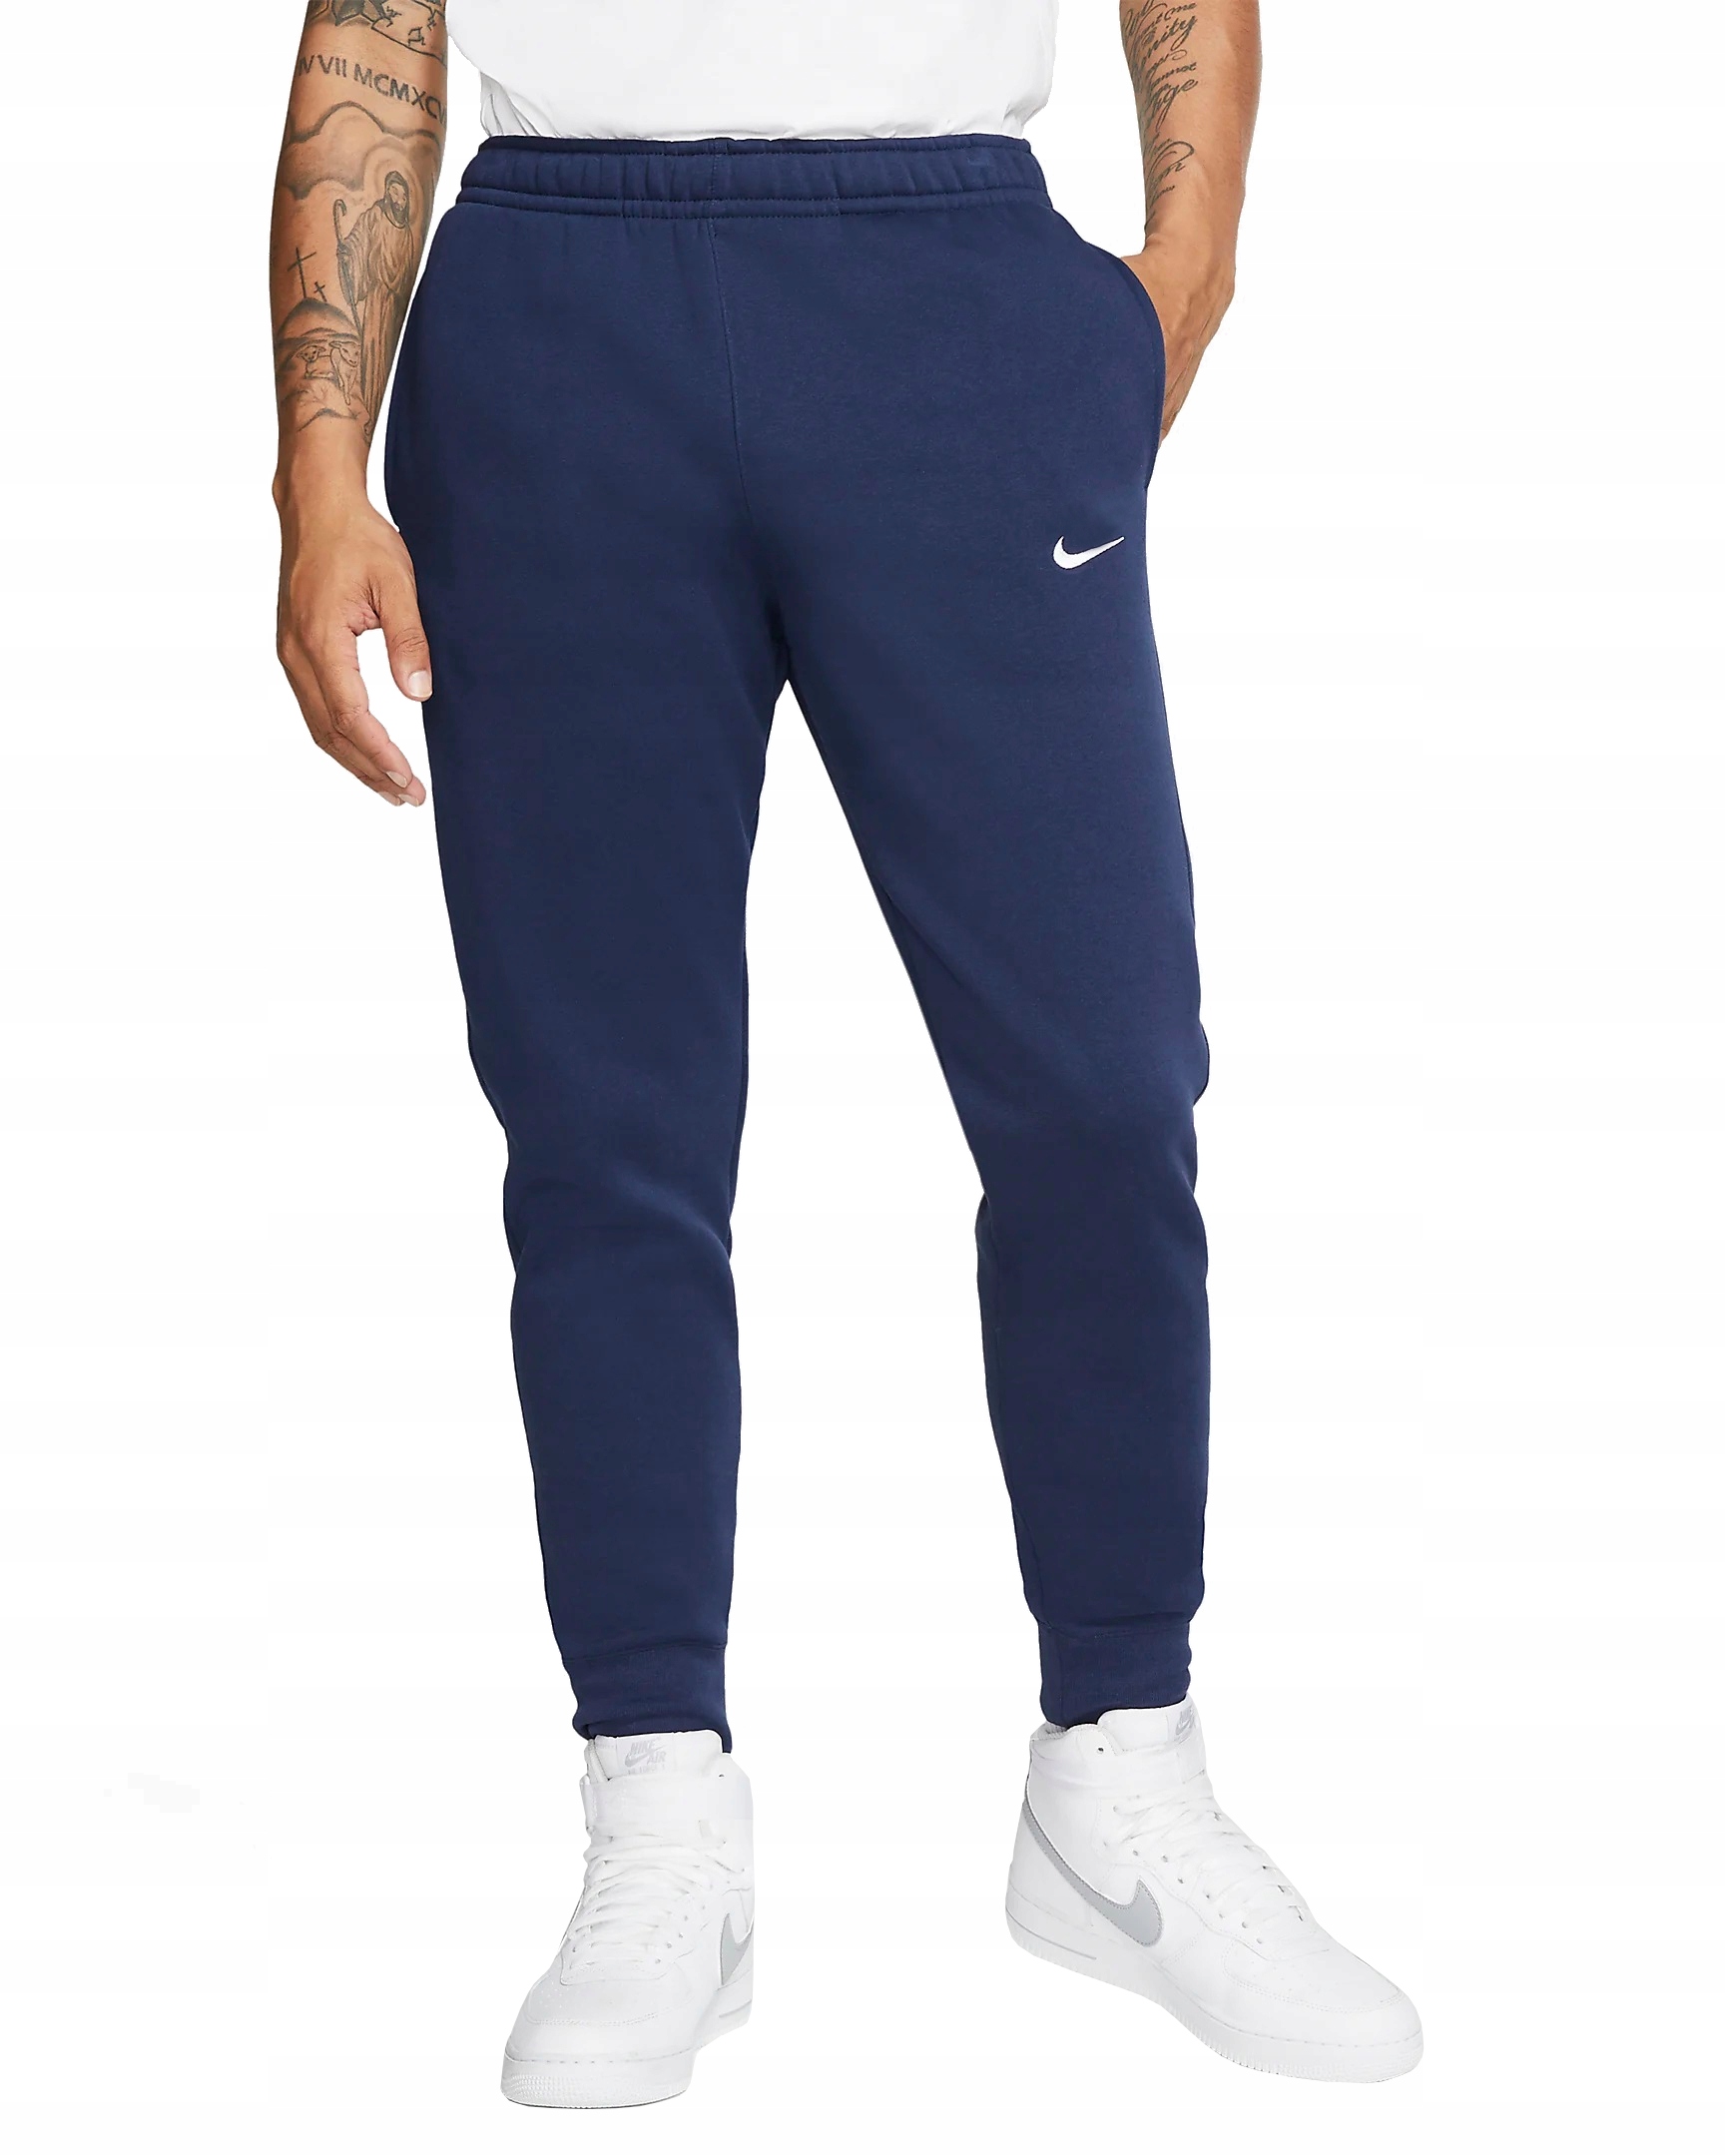 Spodnie Nike Bawełniane jogger dresy MĘSKIE rS-XXL 12591859662 - Allegro.pl